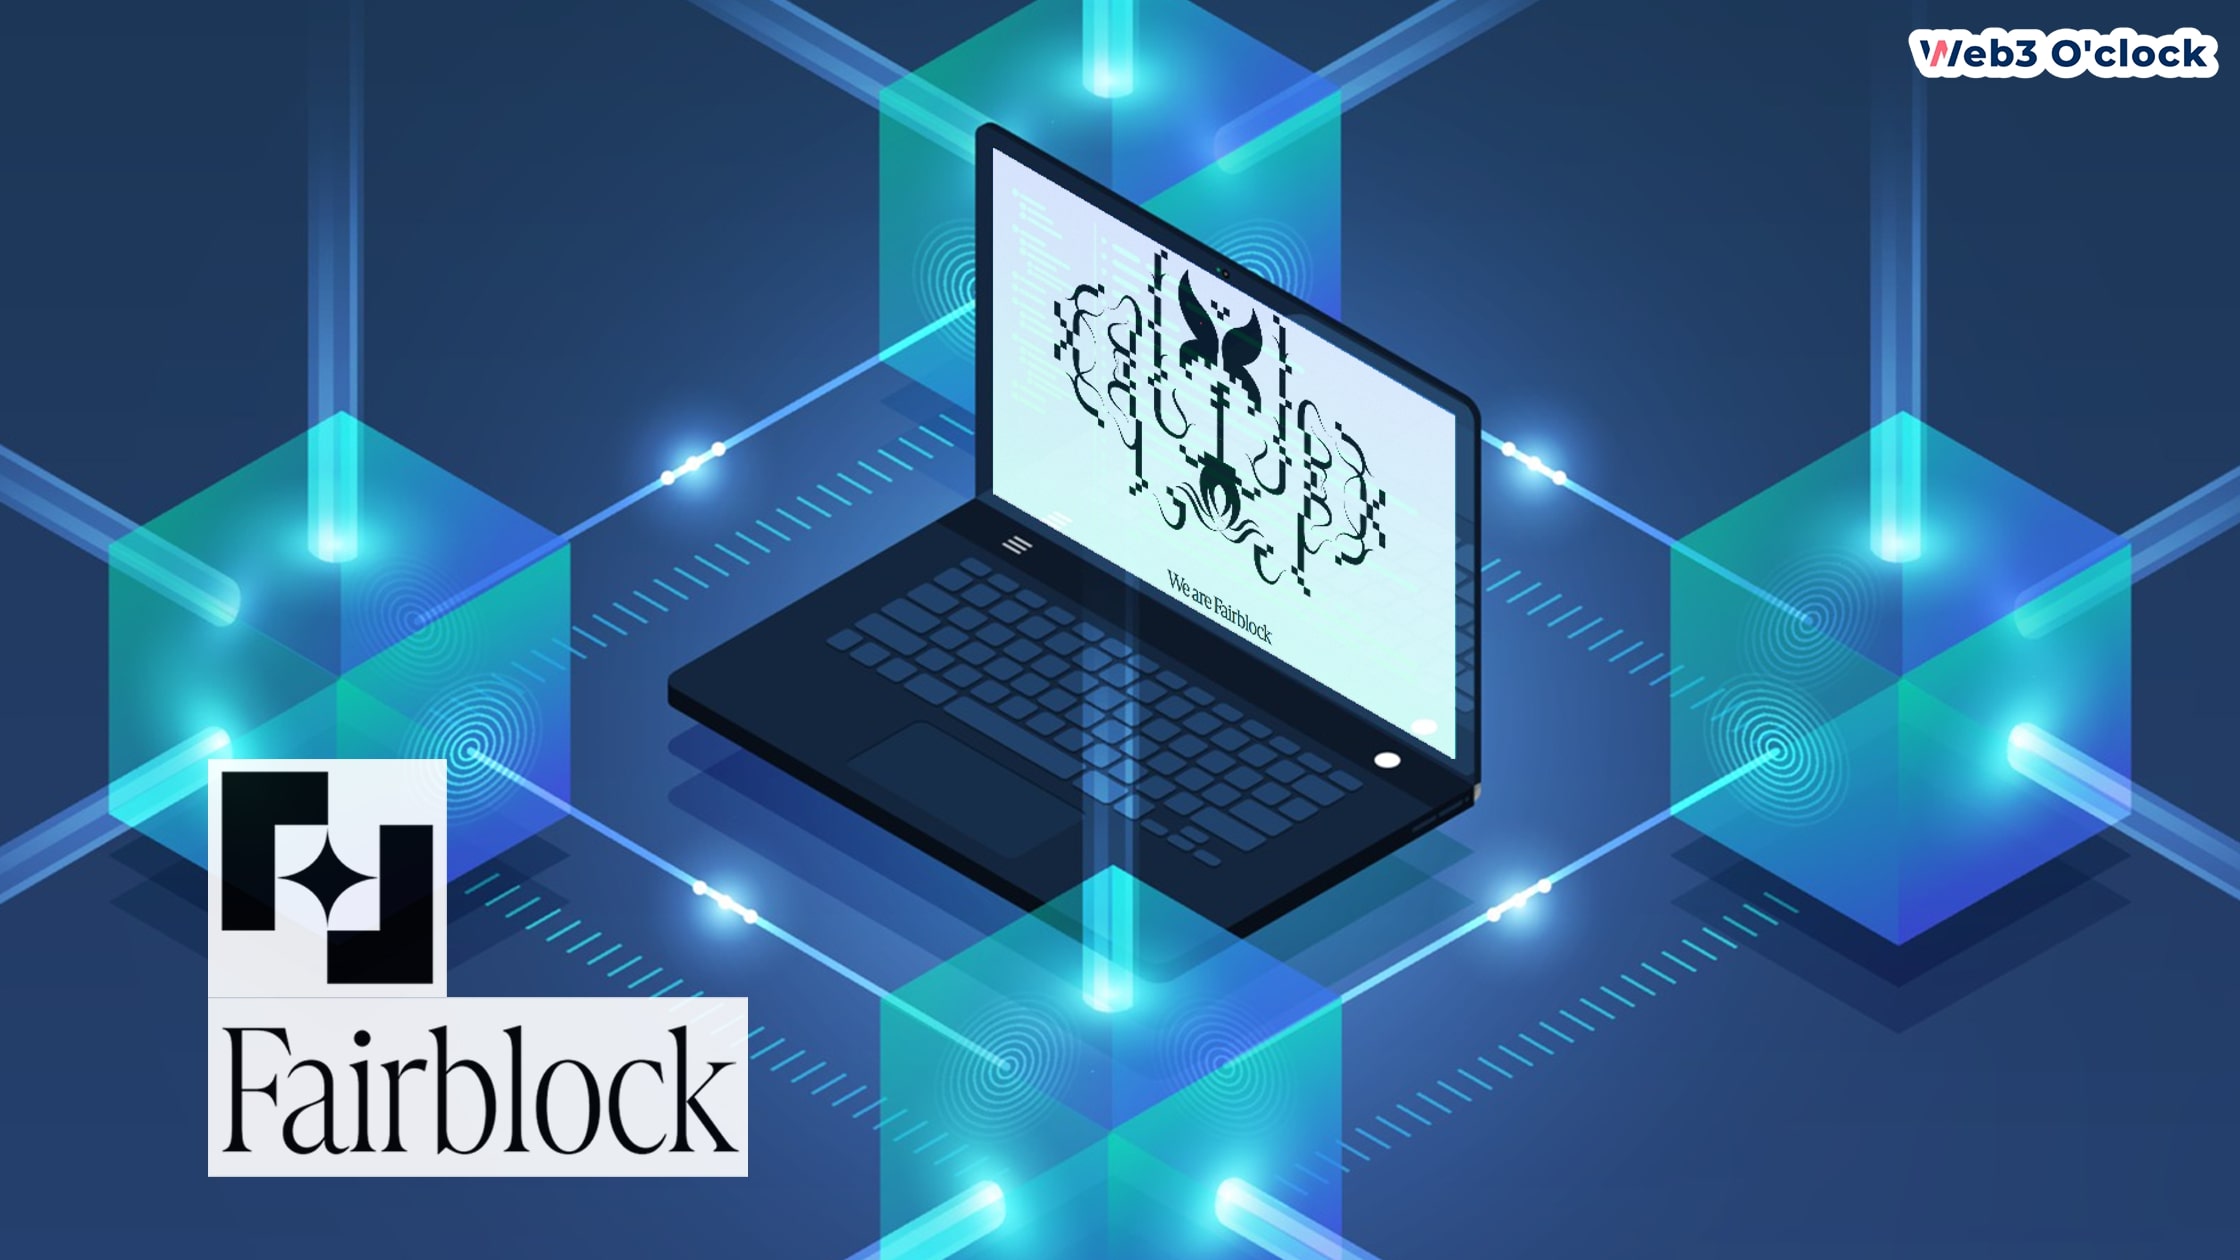 Fairblock Raises $2.5M by web3oclock